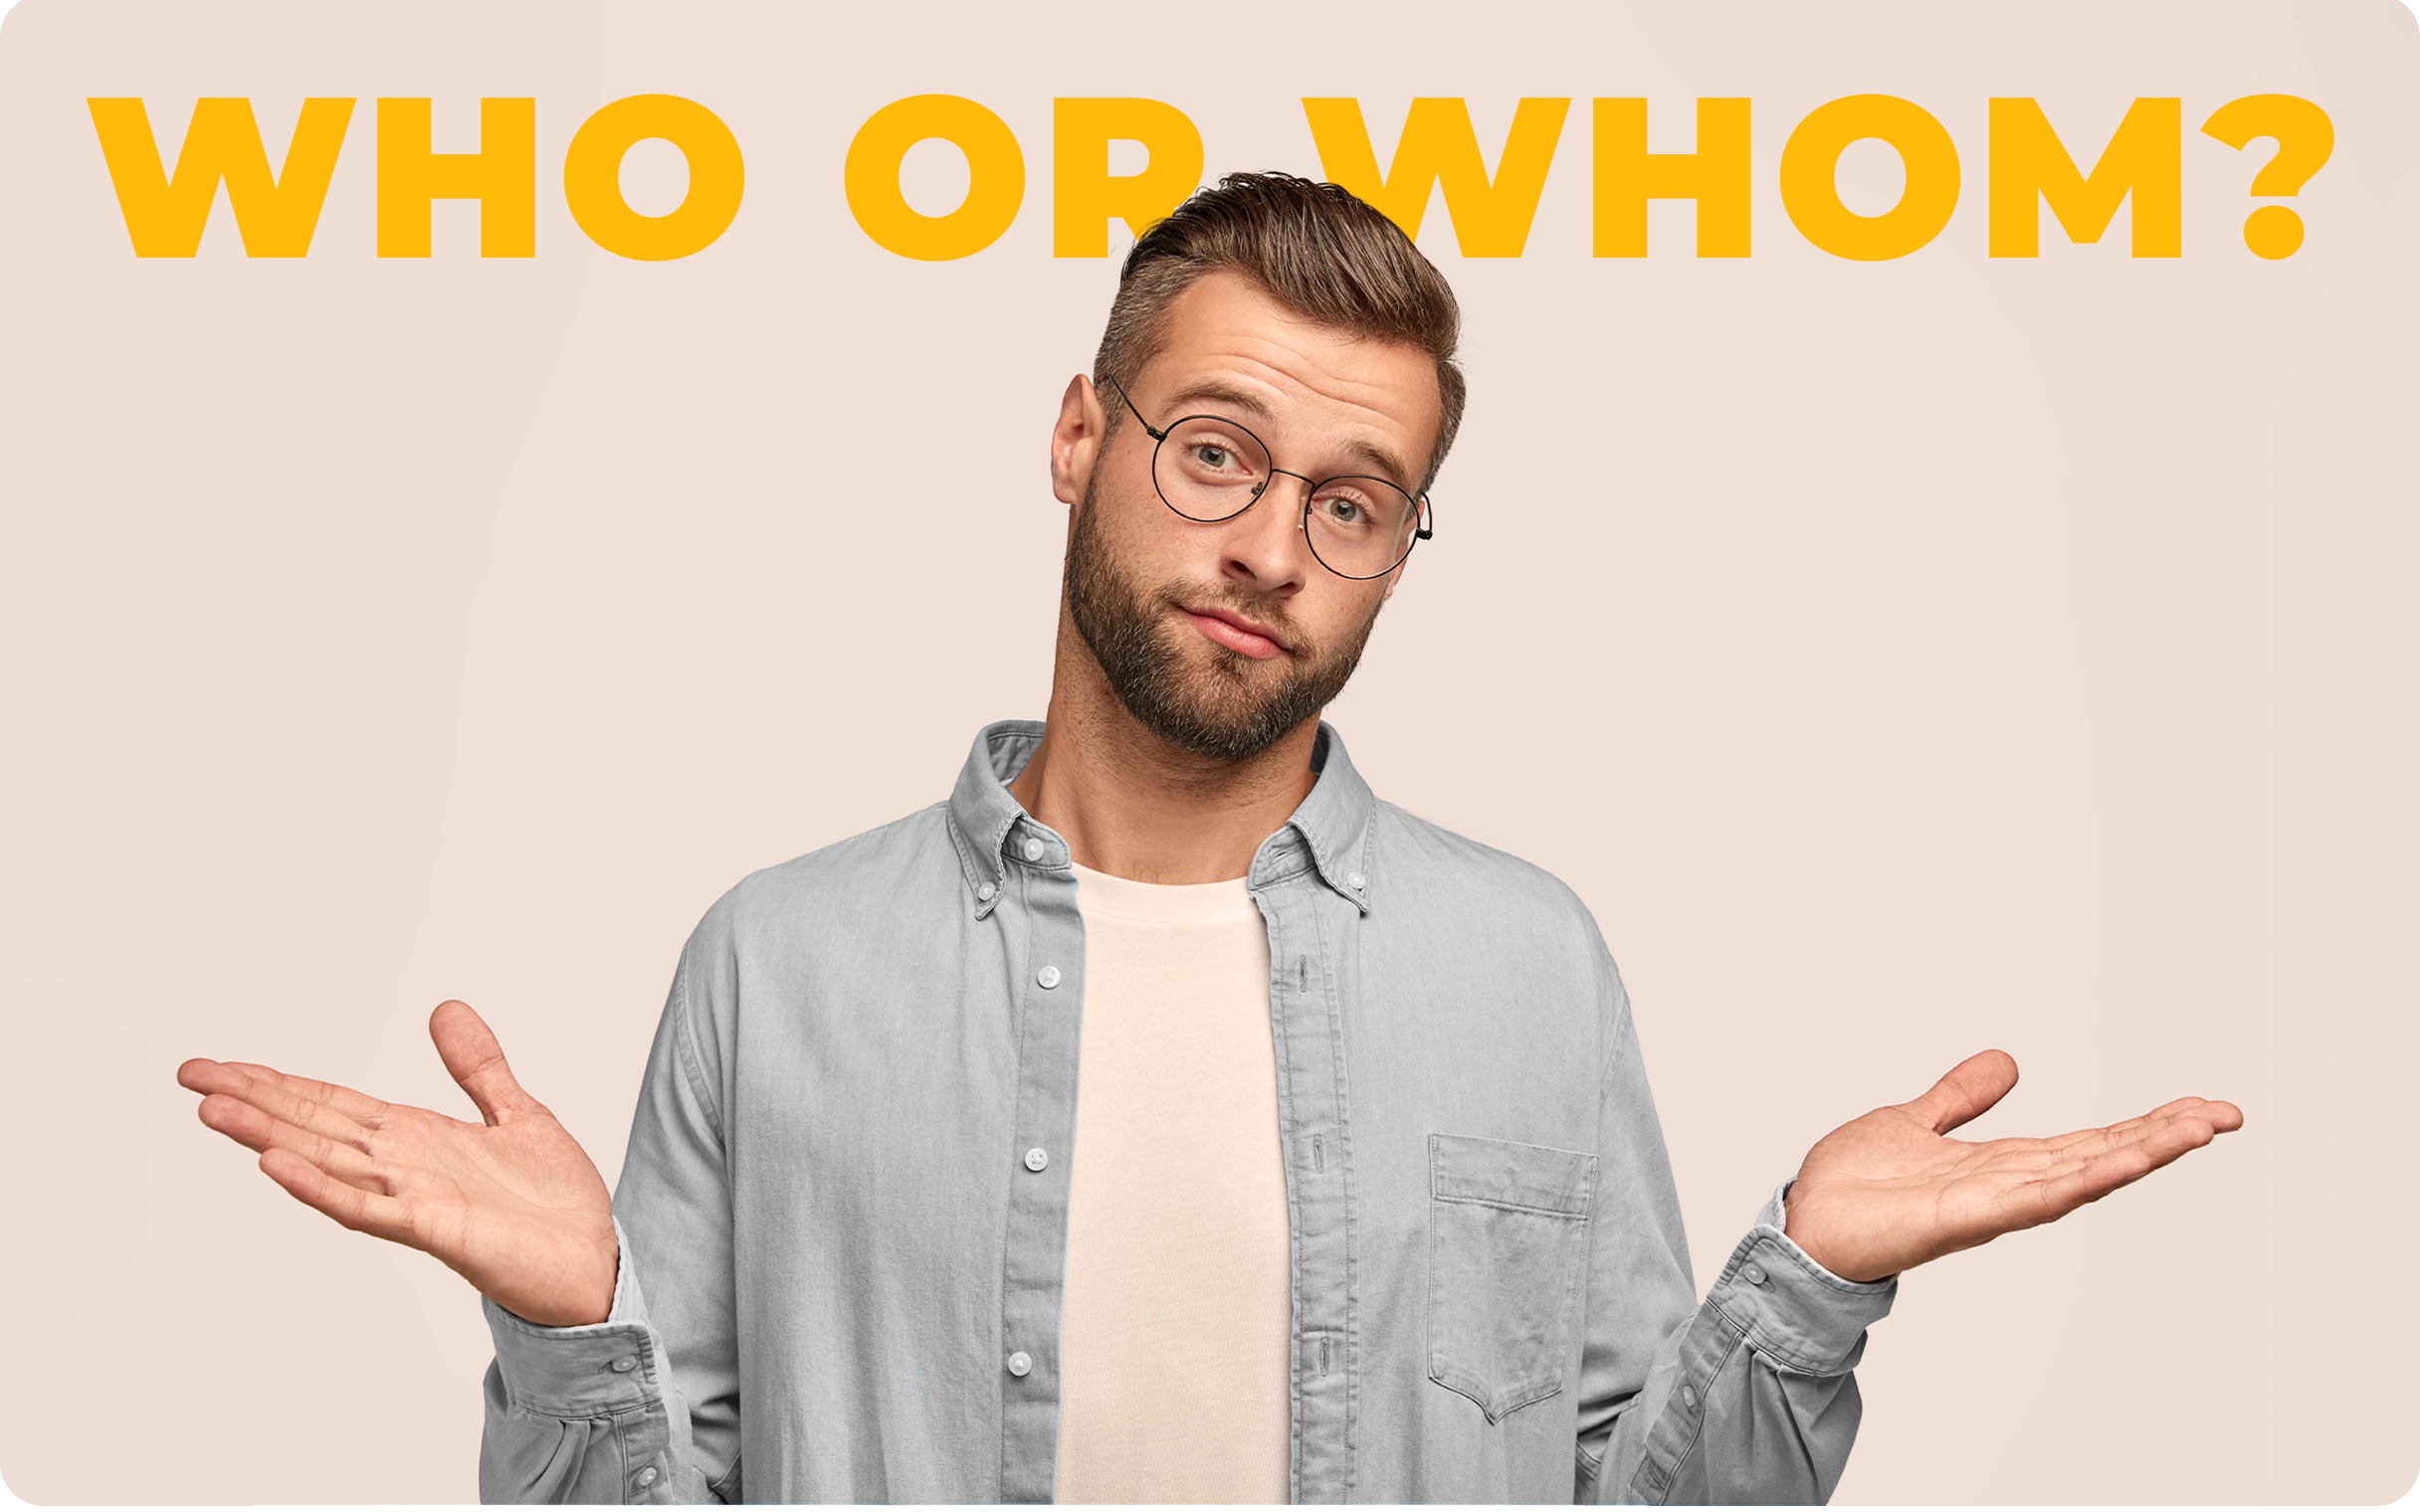 Der Unterschied zwischen "who" und "whom" im Englischen